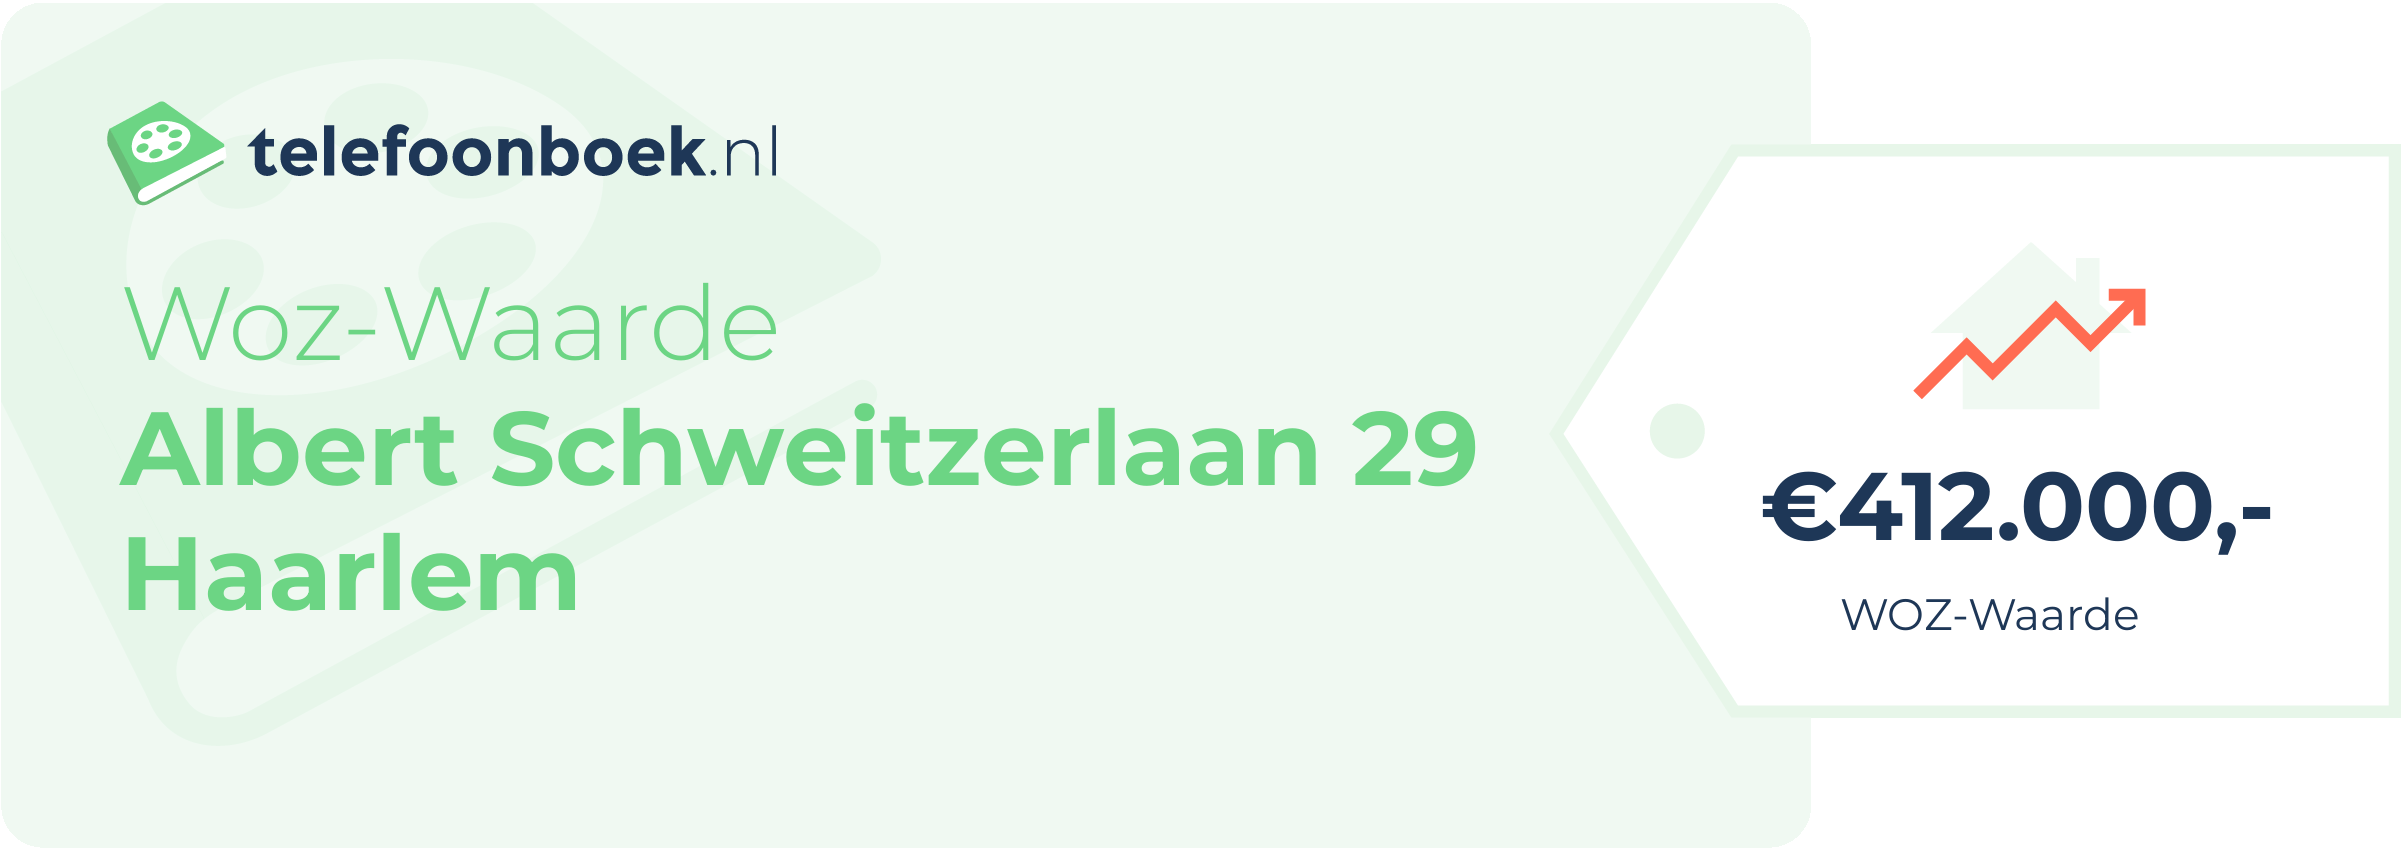 WOZ-waarde Albert Schweitzerlaan 29 Haarlem